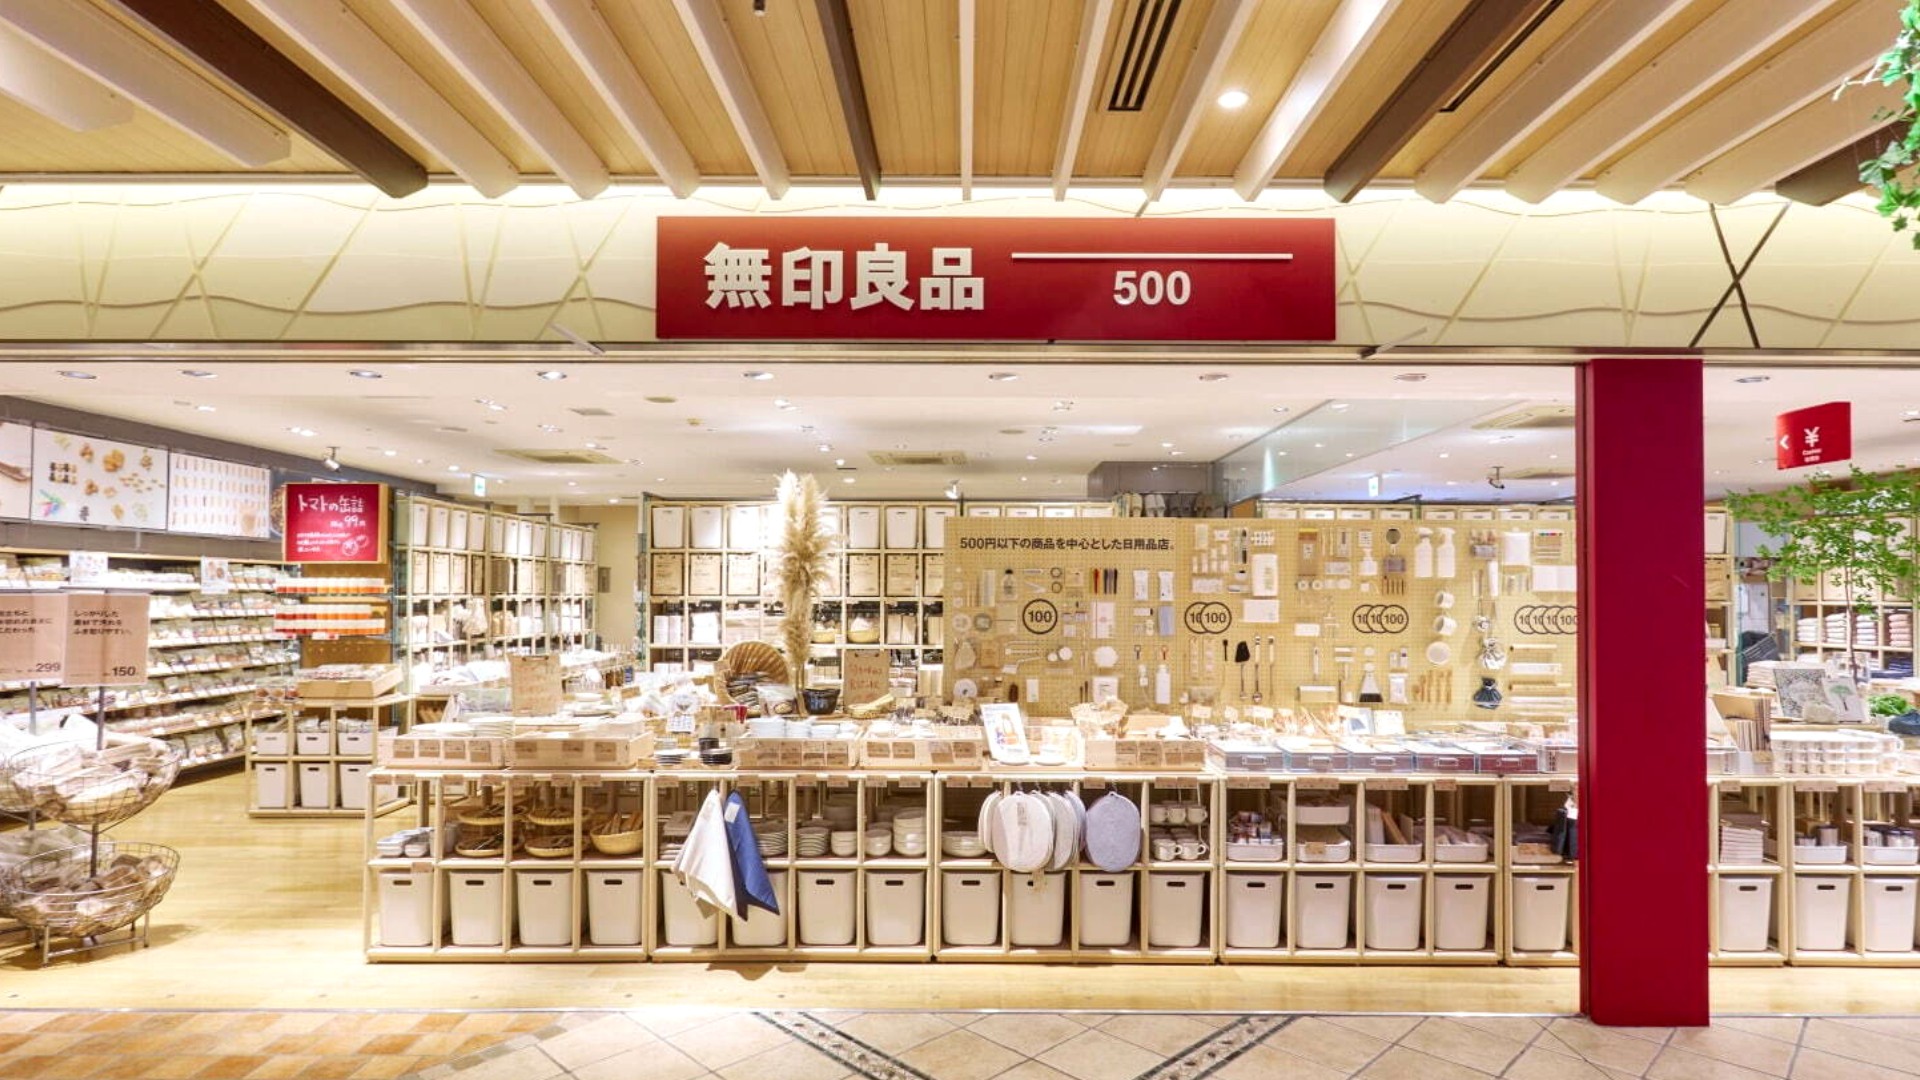 東京首間 無印良品500 百元商店新開幕 以日用品為主 打造新型態muji 店鋪 Shoppingdesign